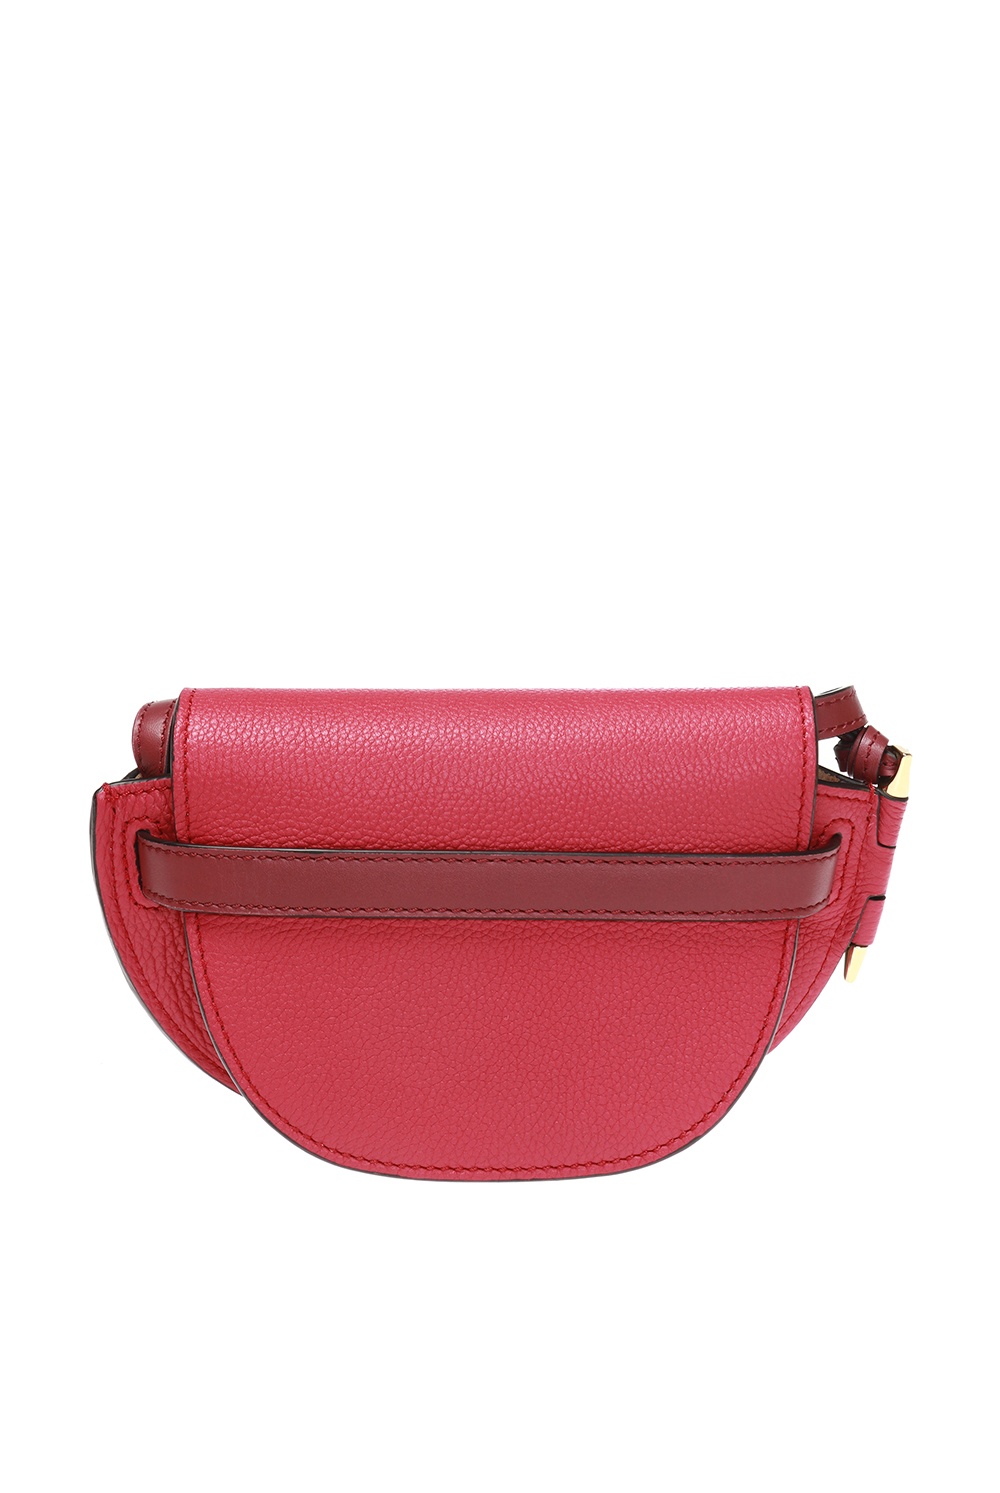 Auth LOEWE Logo 2-Way Handbag Shoulder Bag Pink Leather/Silvertone - e54444i